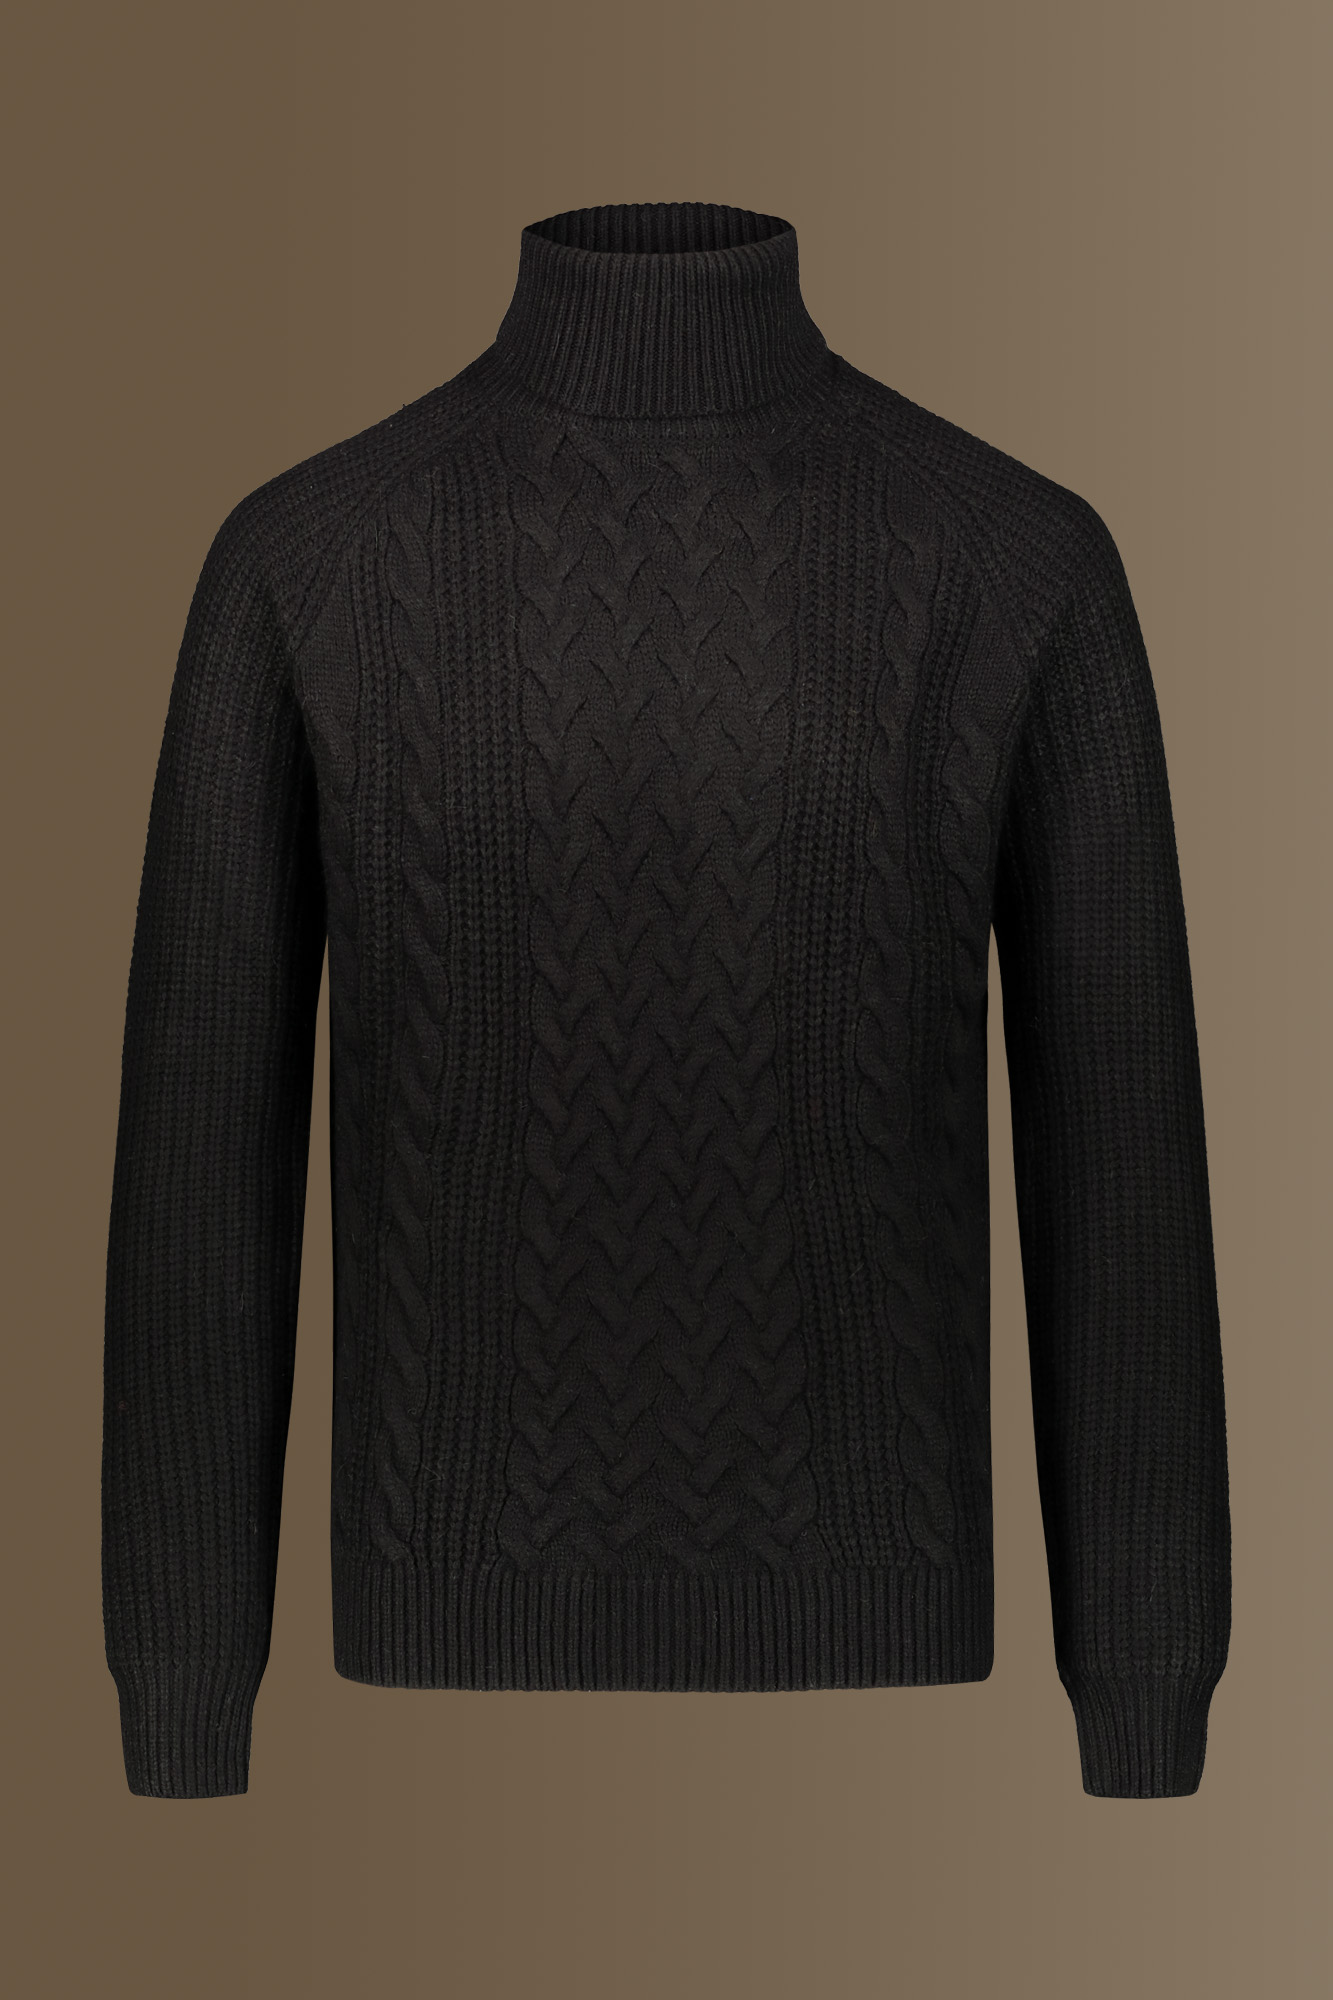 Turtle neck sweater wool blend raglan sleeves image number null